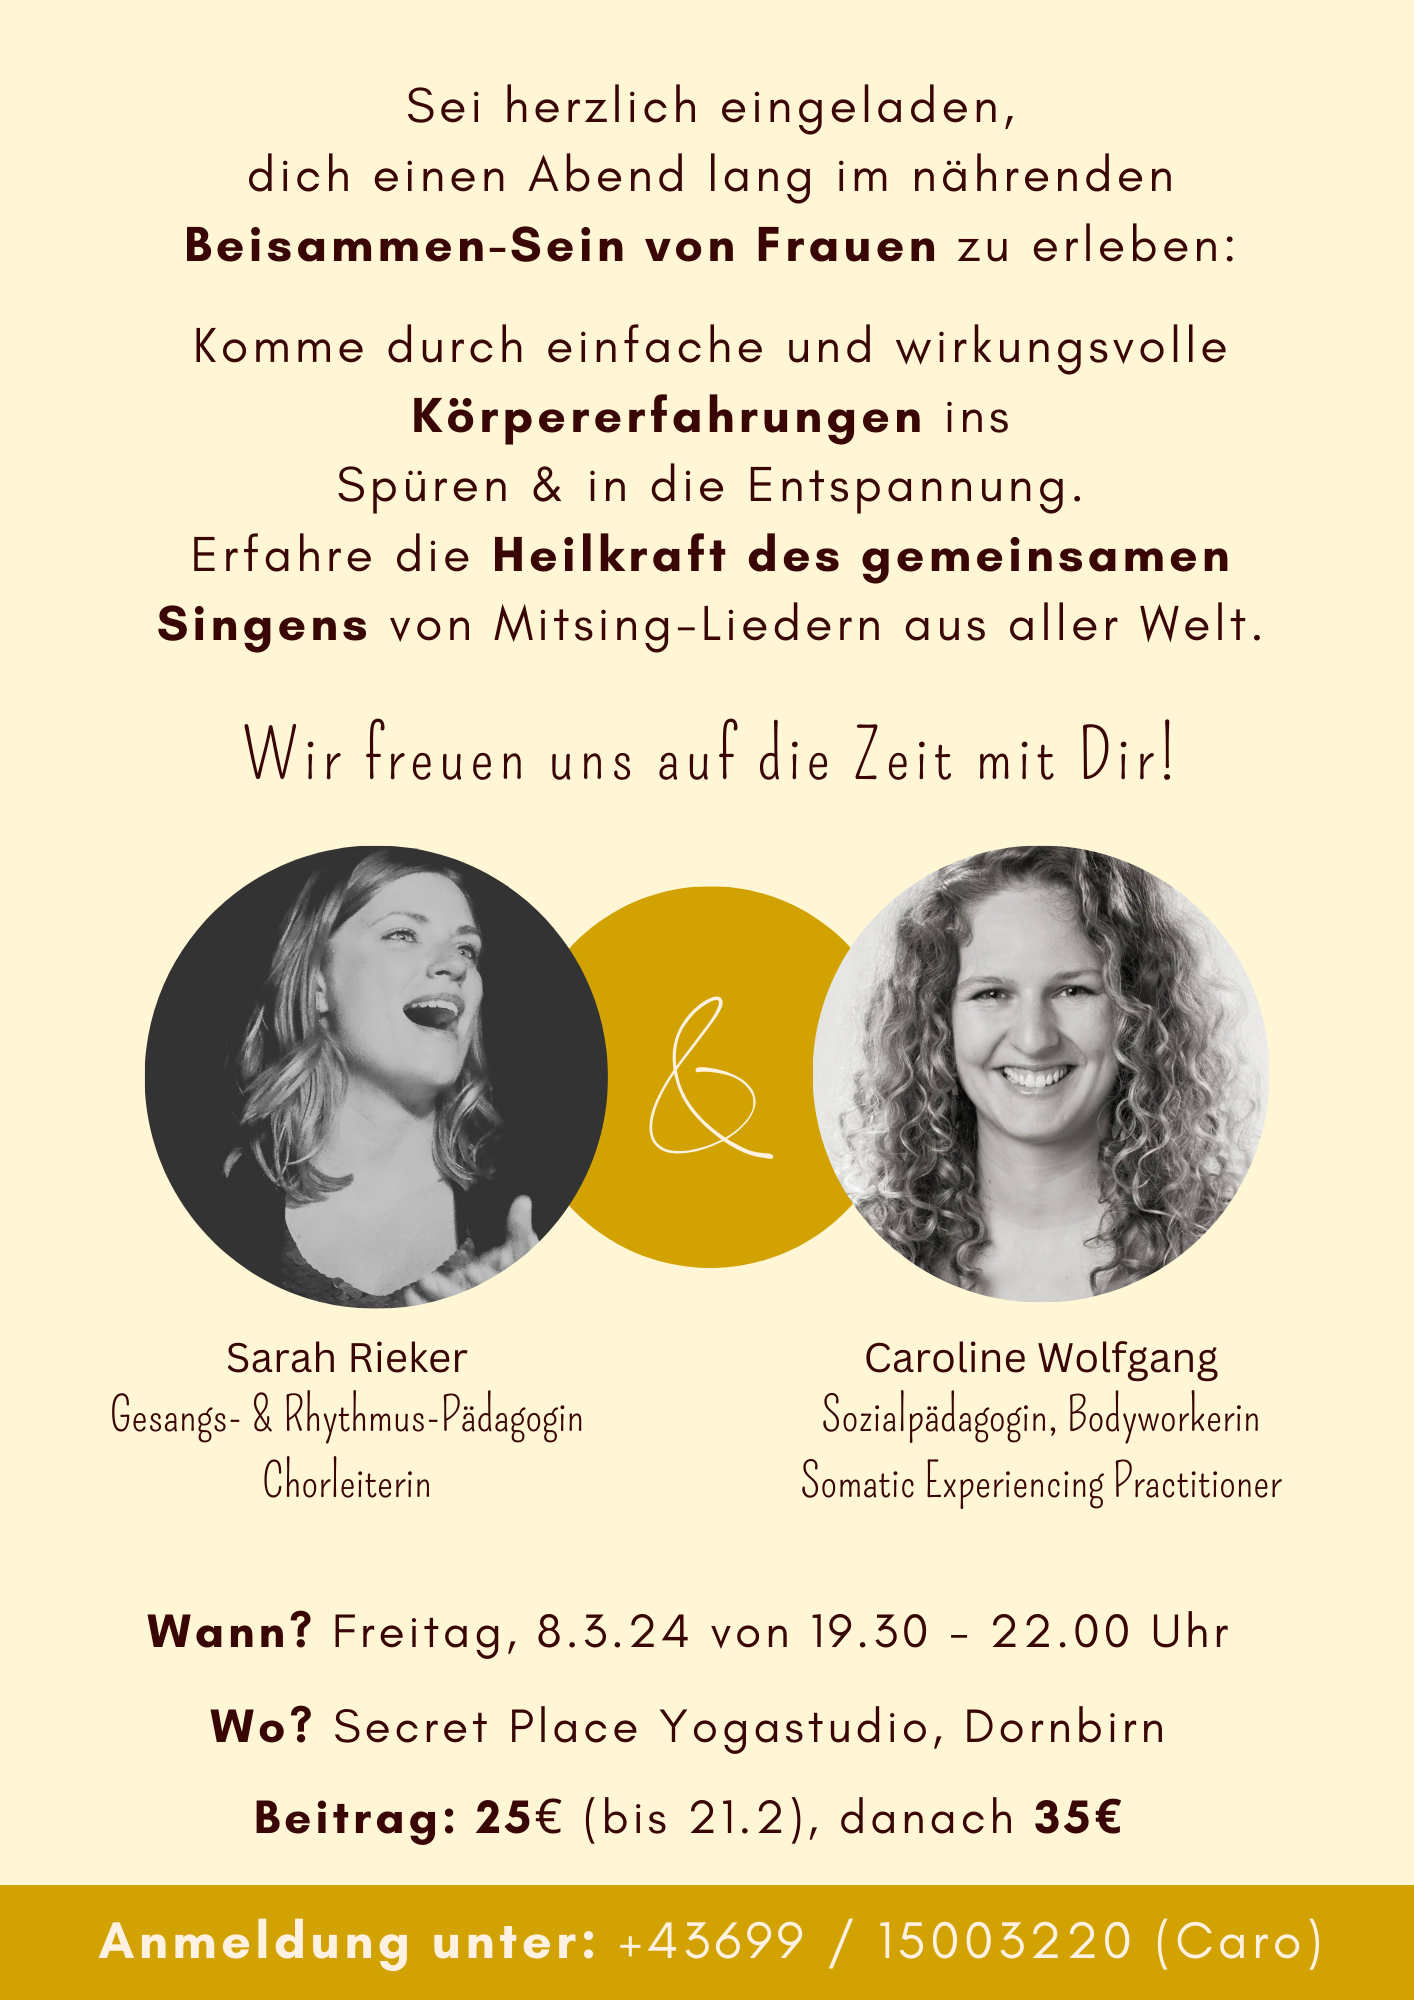 Frauen-Zeit mit Caroline Wolfgang am 8.3.24 in Dornbirn, A